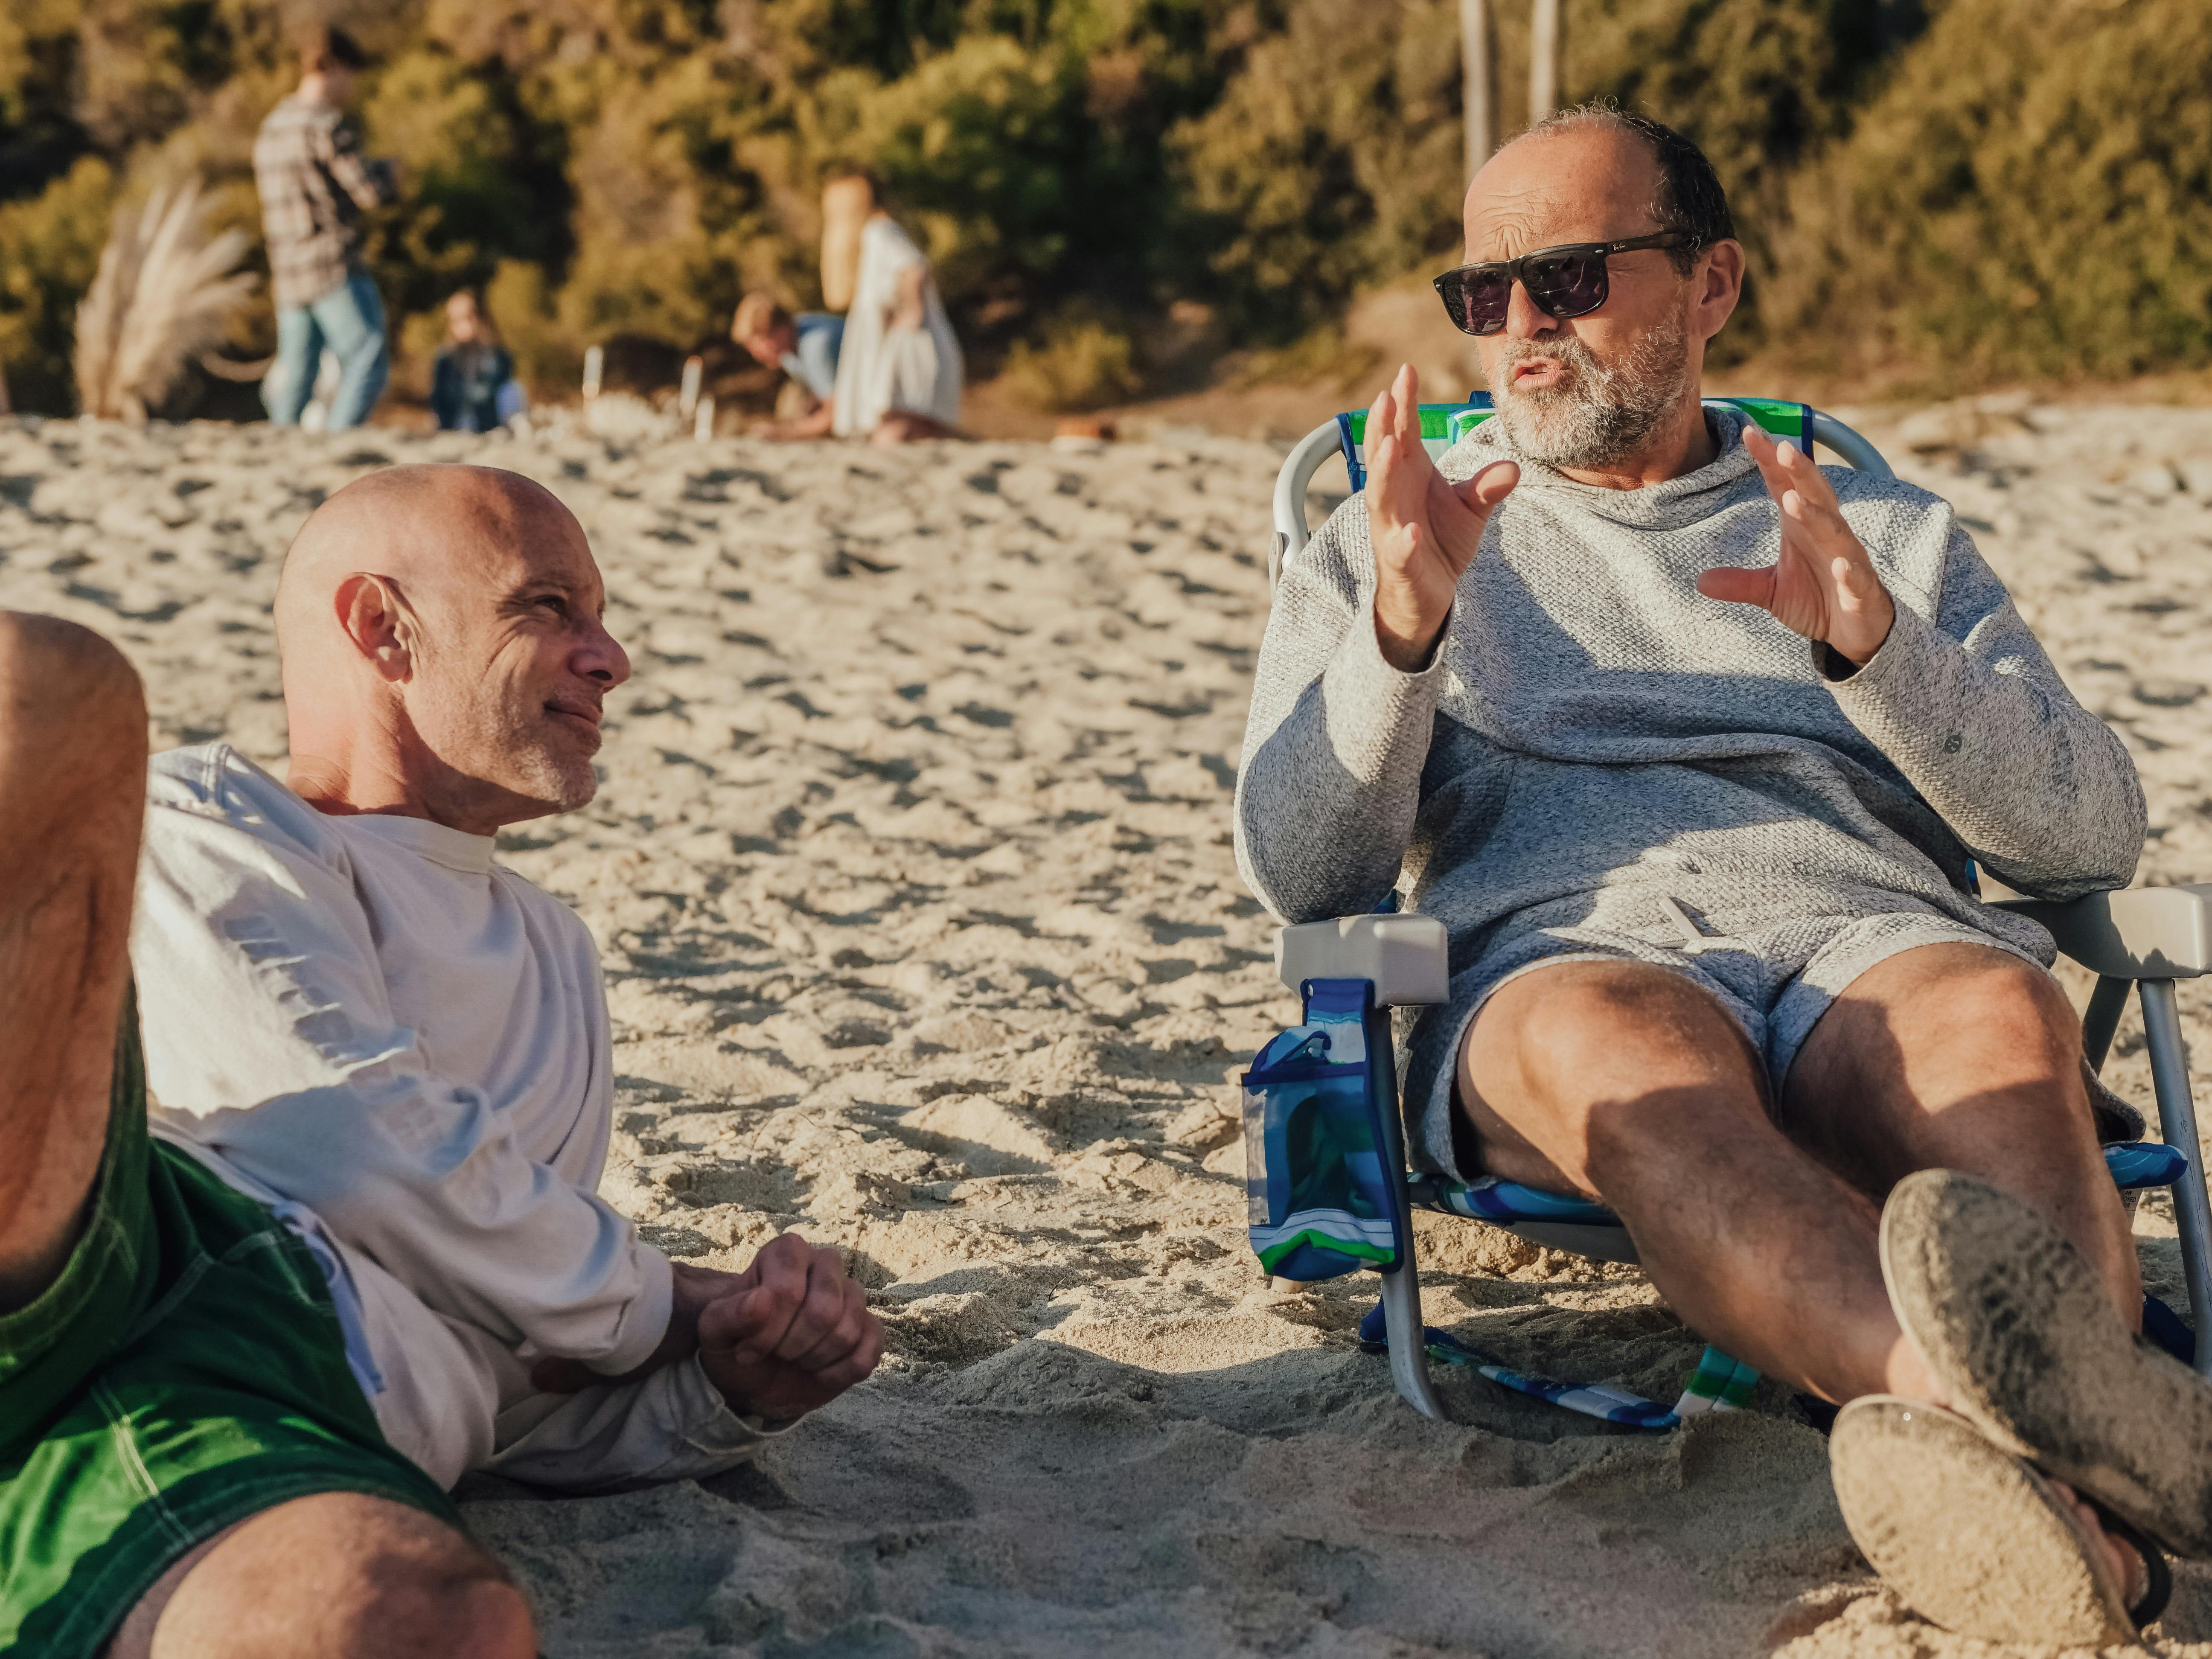 Ein Mann mittleren Alters, der am Strand vor einem anderen Mann mit etwas prahlt | Quelle: Pexels